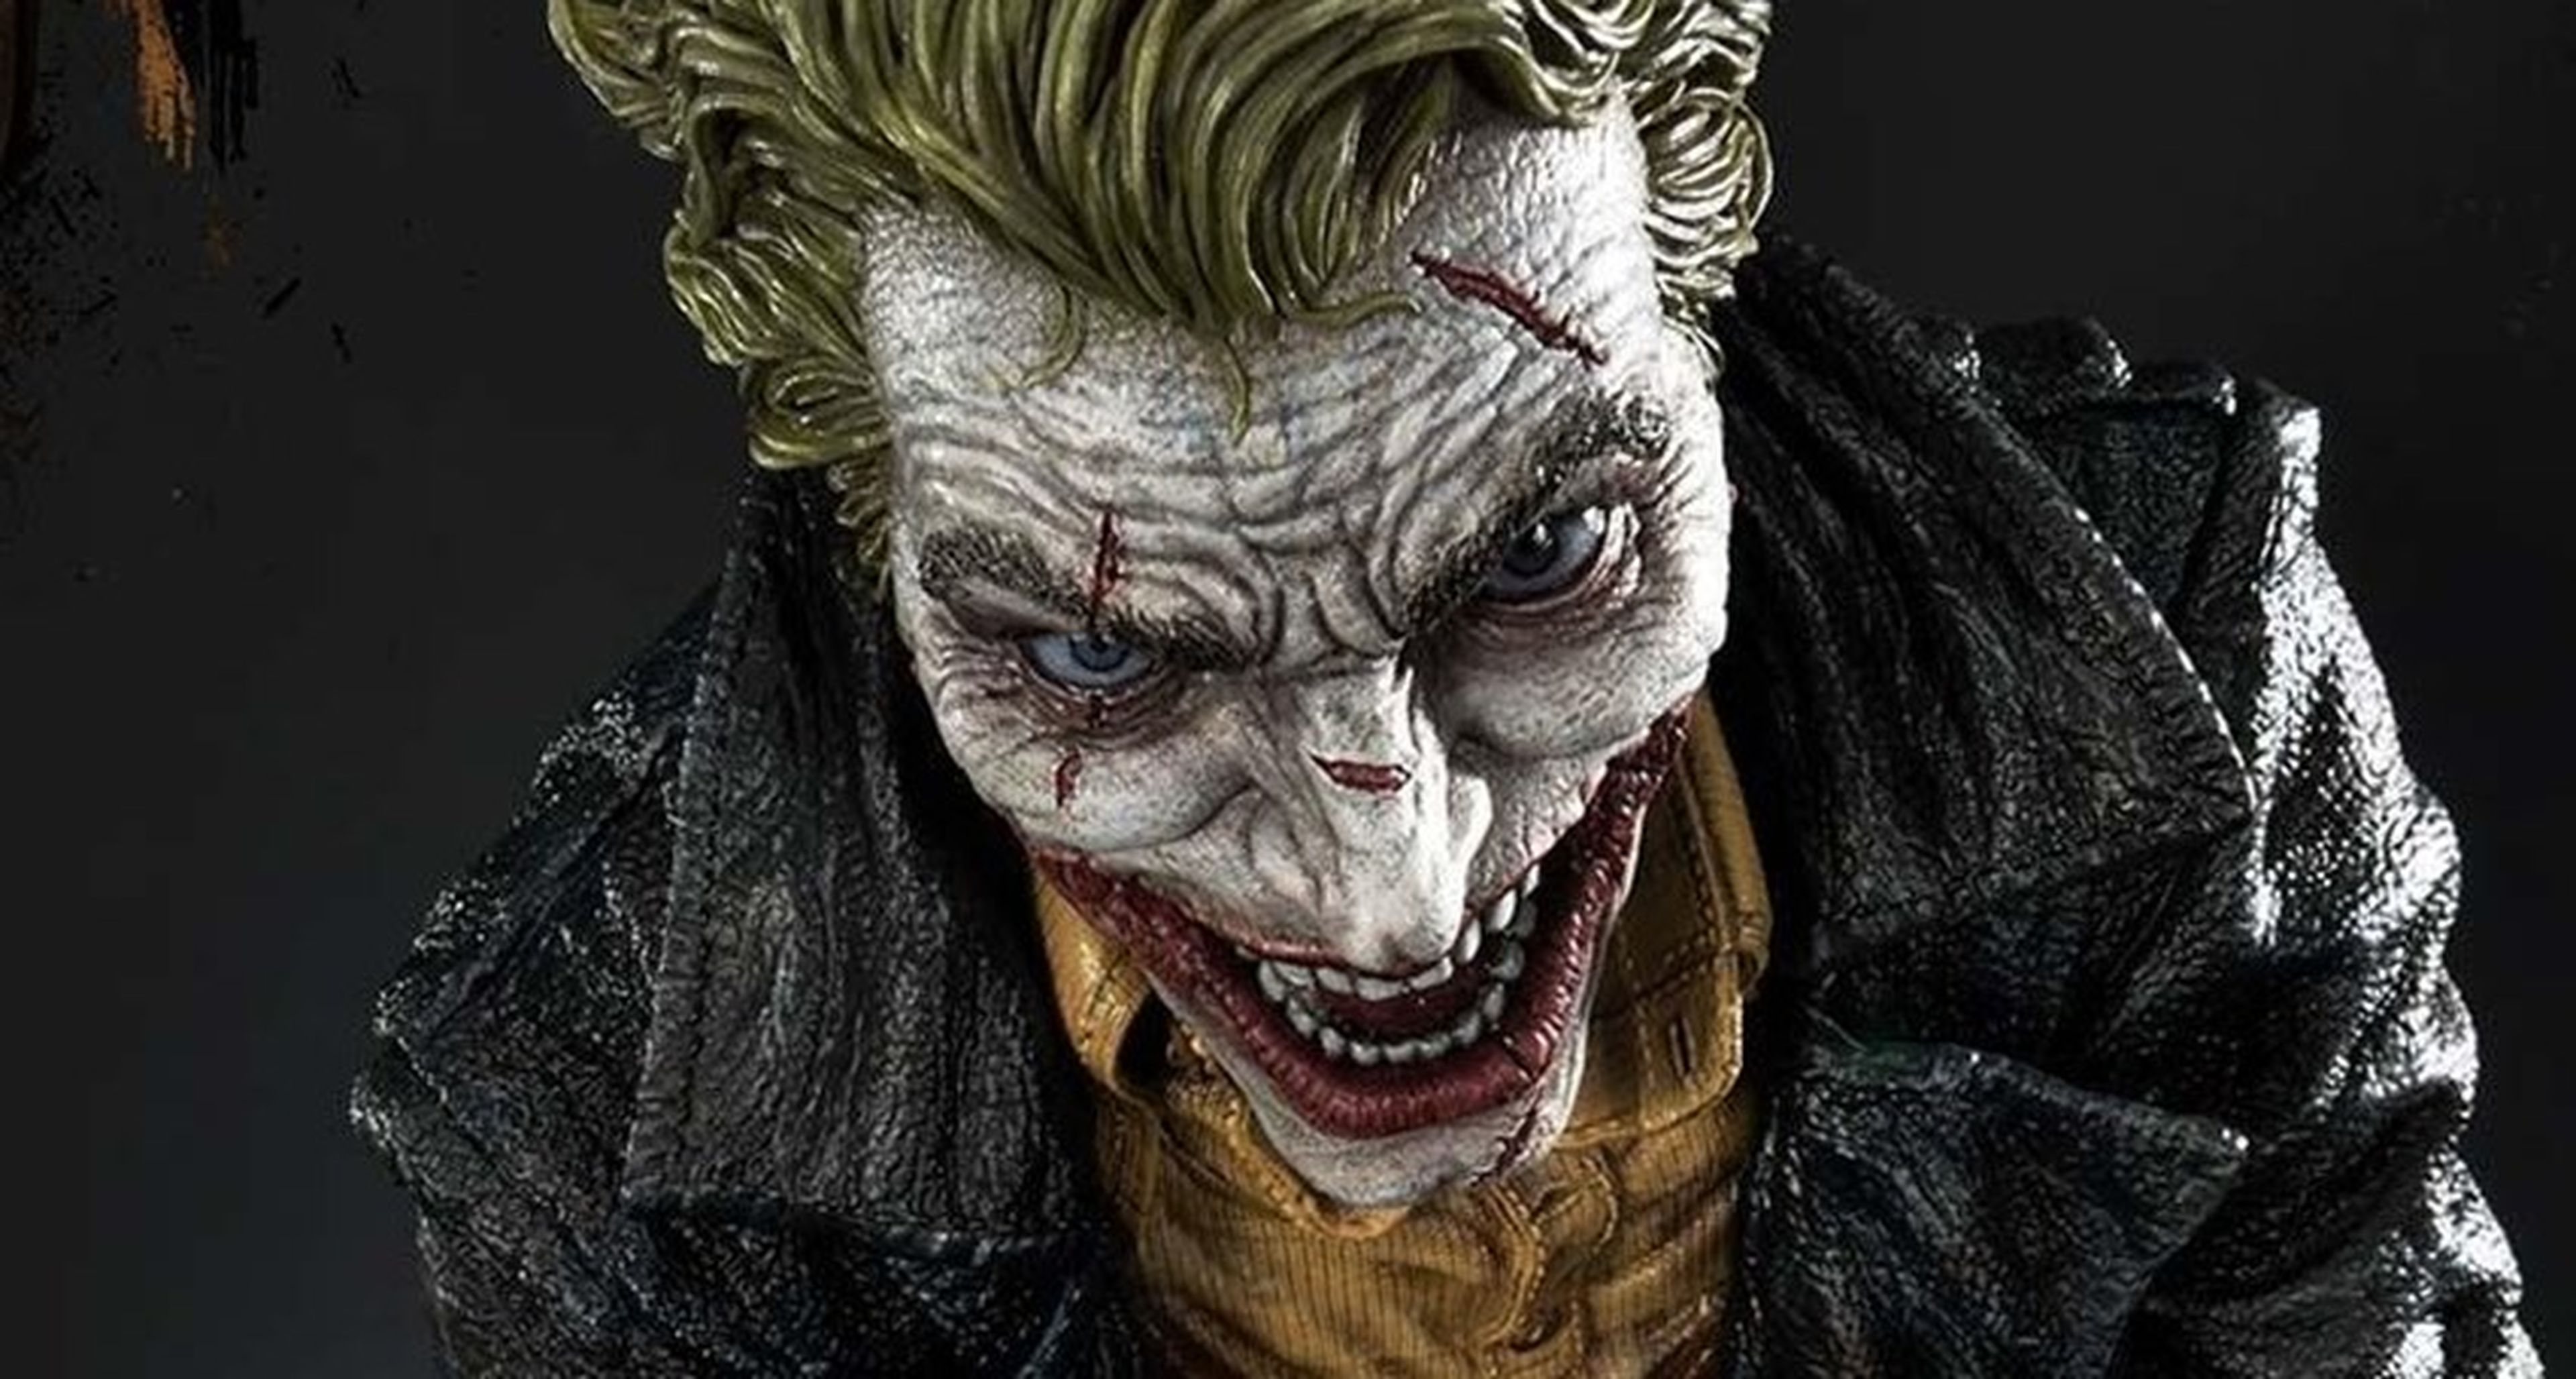 El Joker, más impactante que nunca en este diseño para estatua de Lee Bermejo